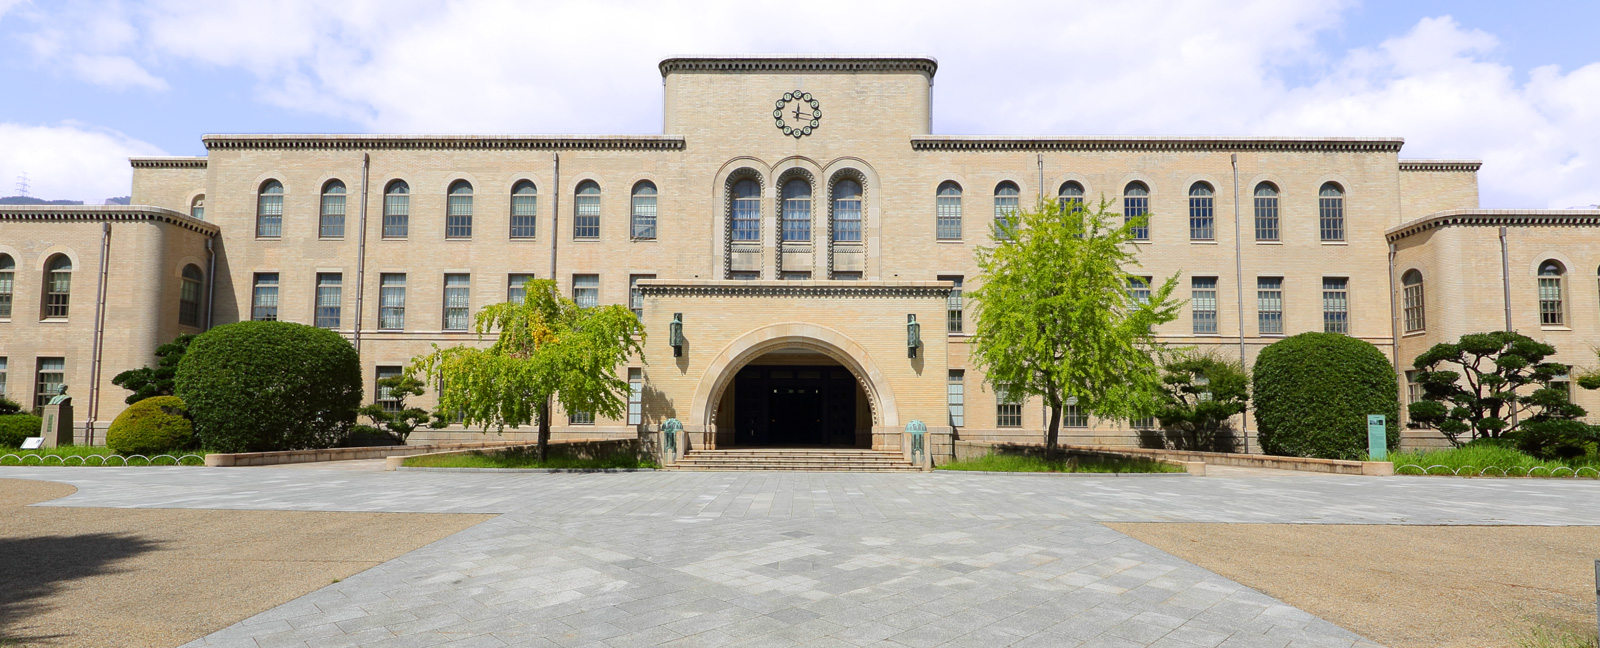 国立大学法人 神戸大学 Kobe University